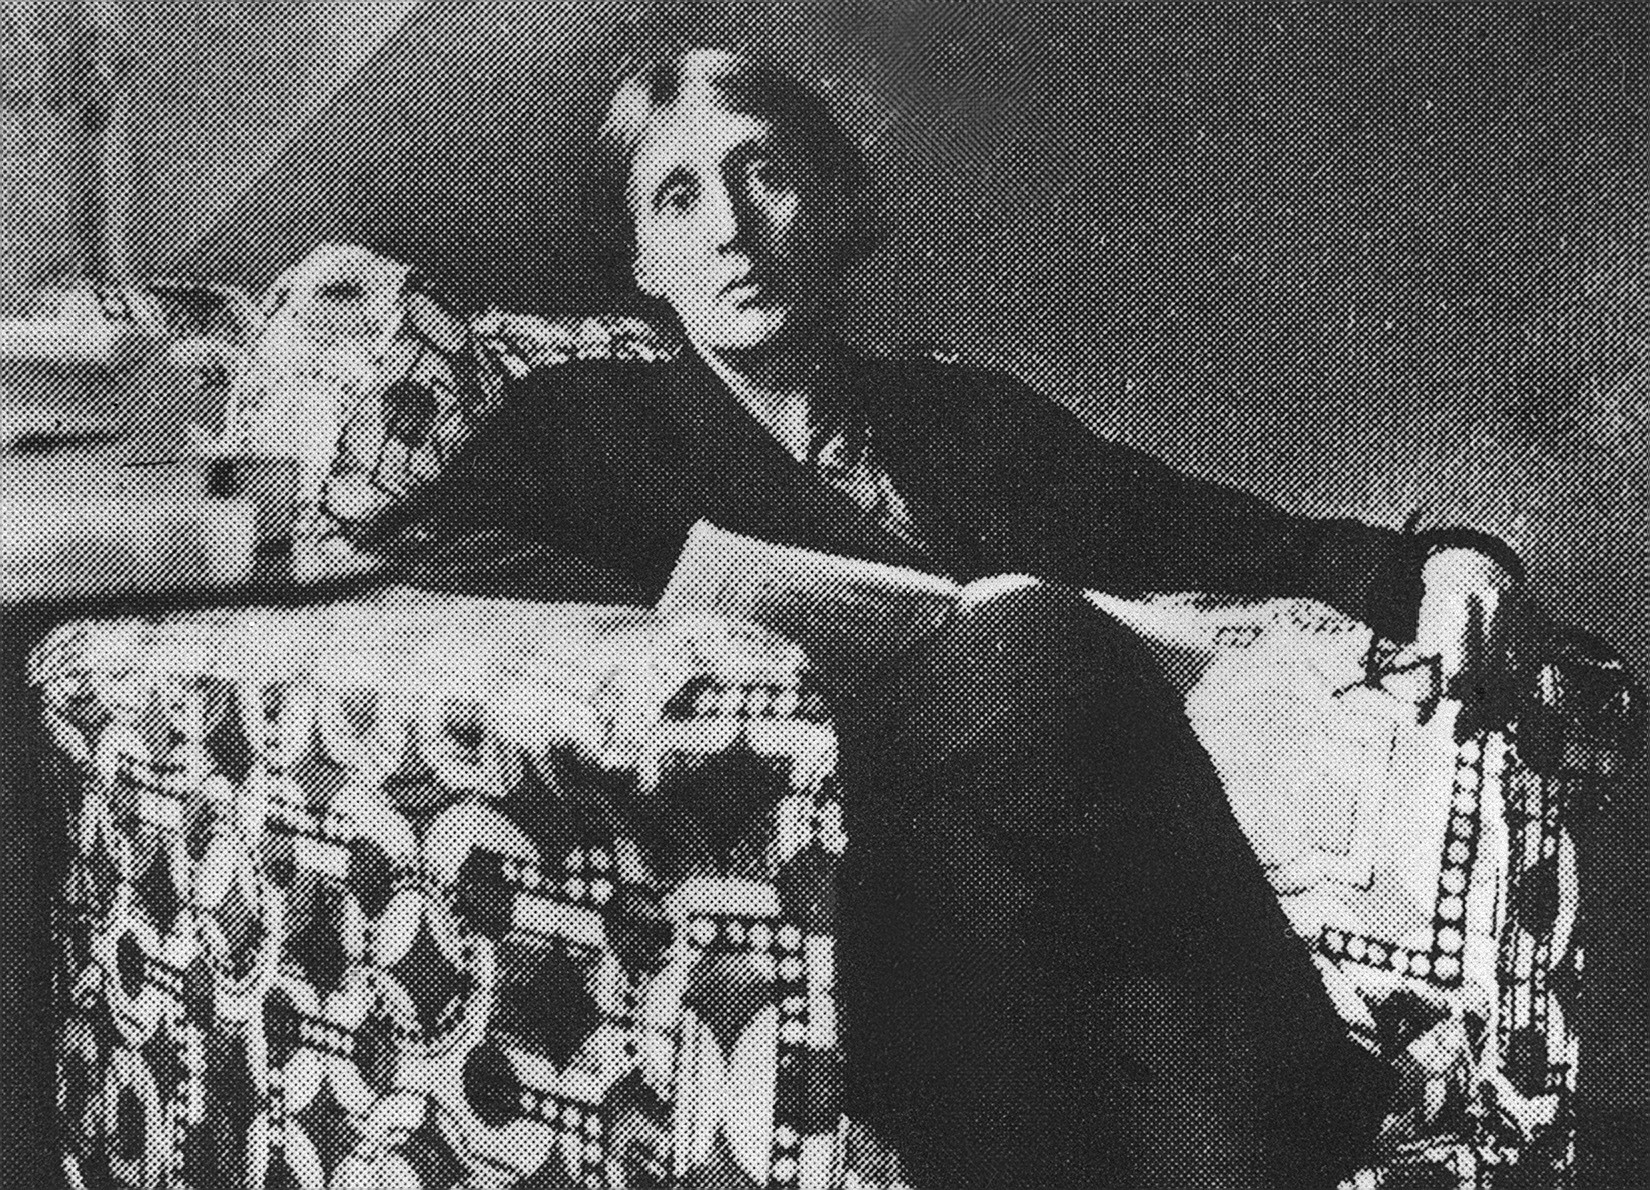 Virginia Woolf padecía crisis depresivas y se suicidó en marzo de 1941.